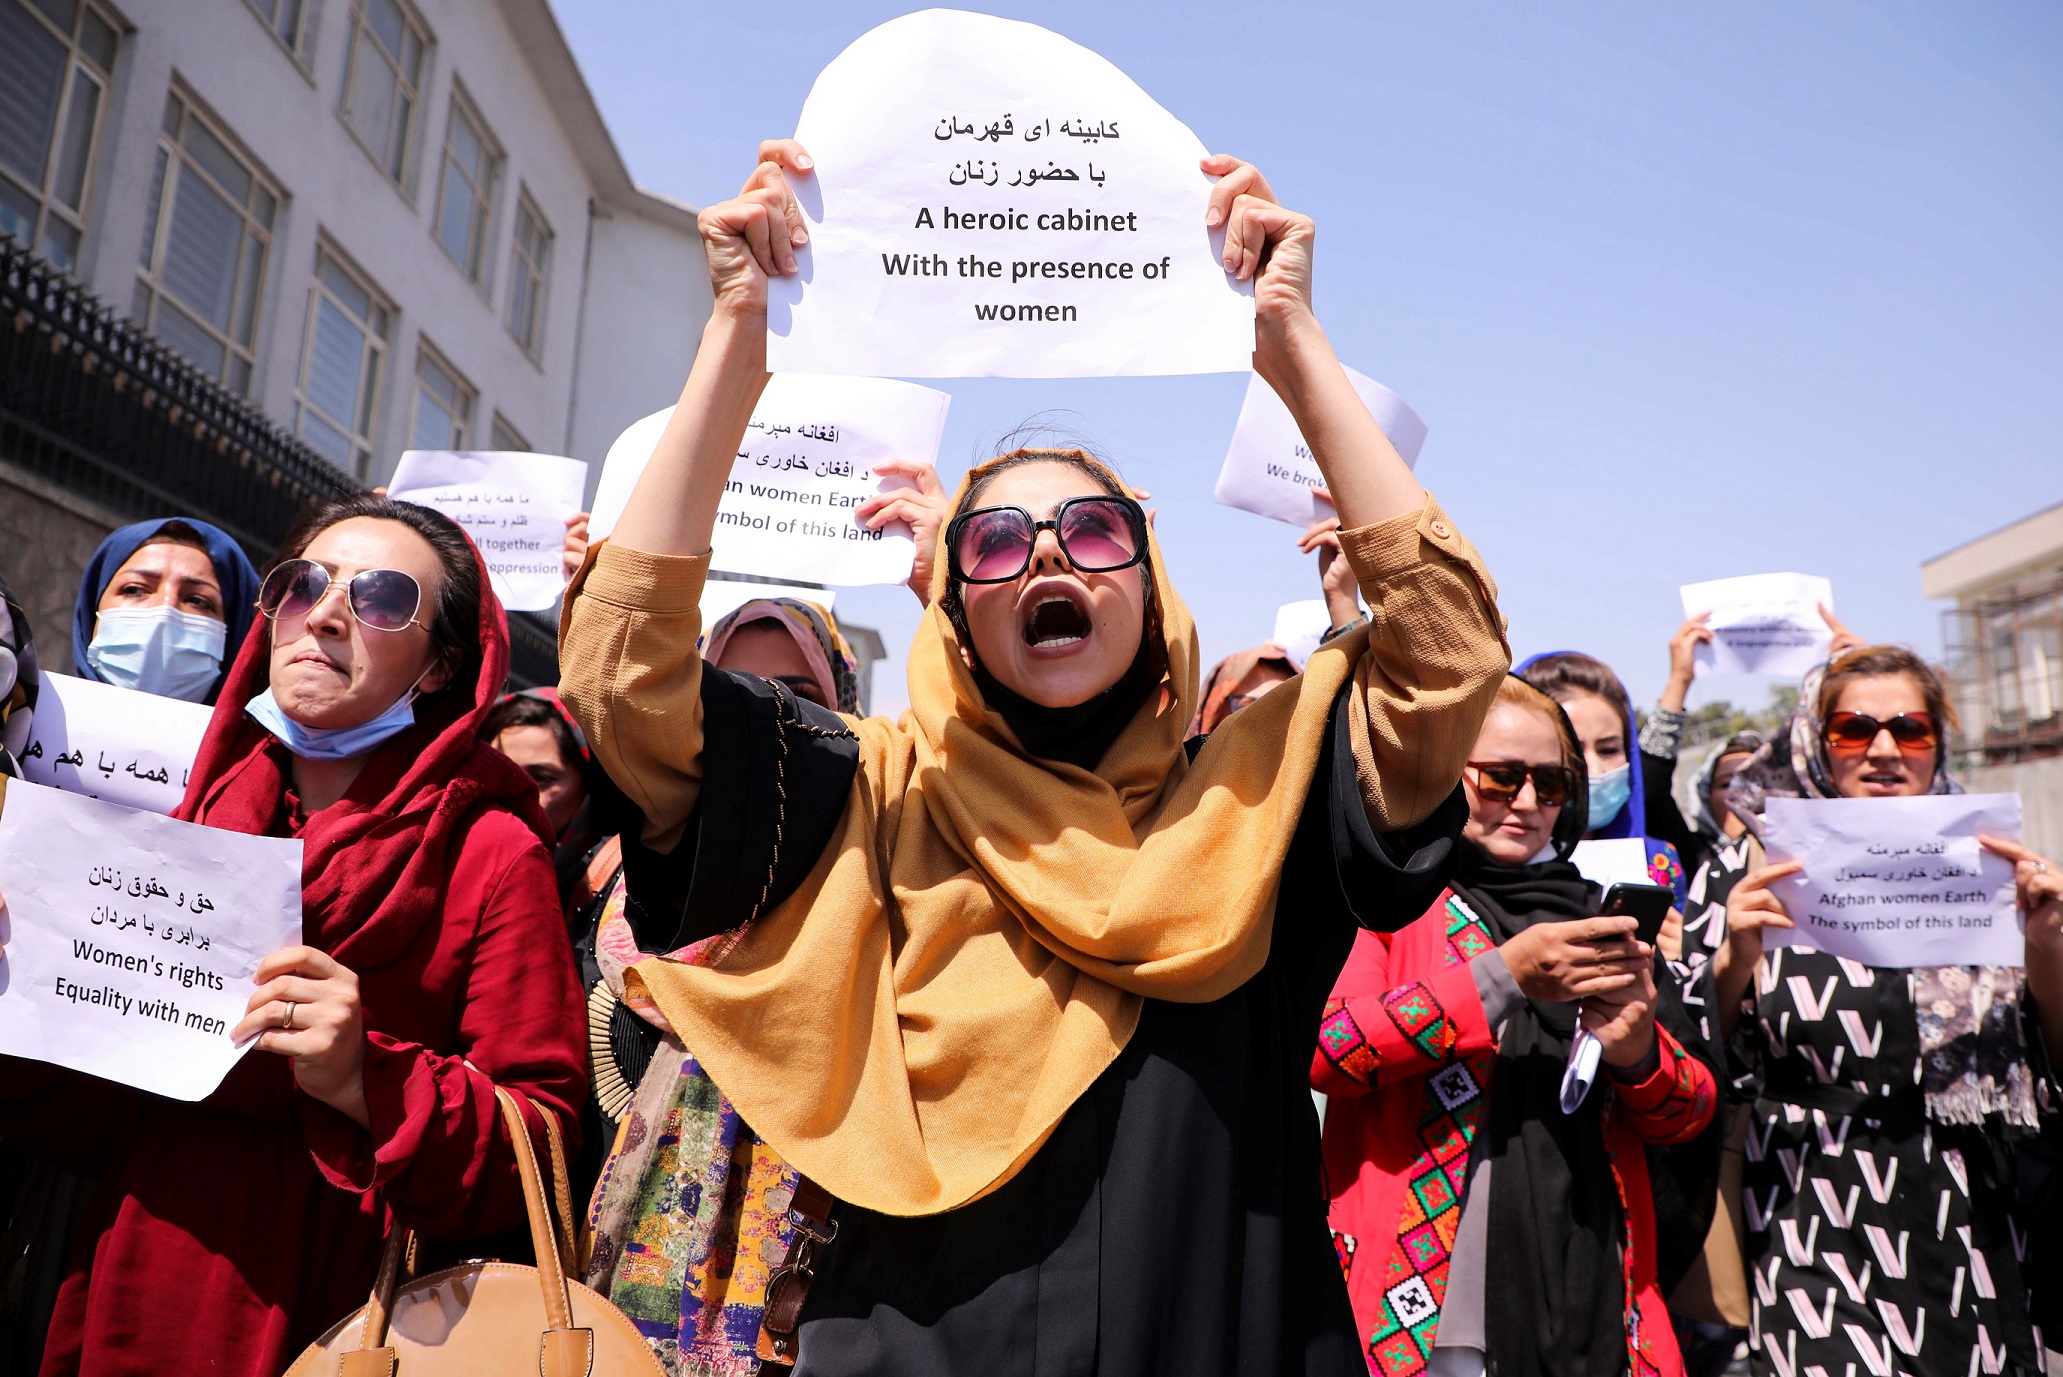 نساء أفغانستان يطالبن حركة طالبان بحفظ حقوقهن واستكمال إنجازاتهم